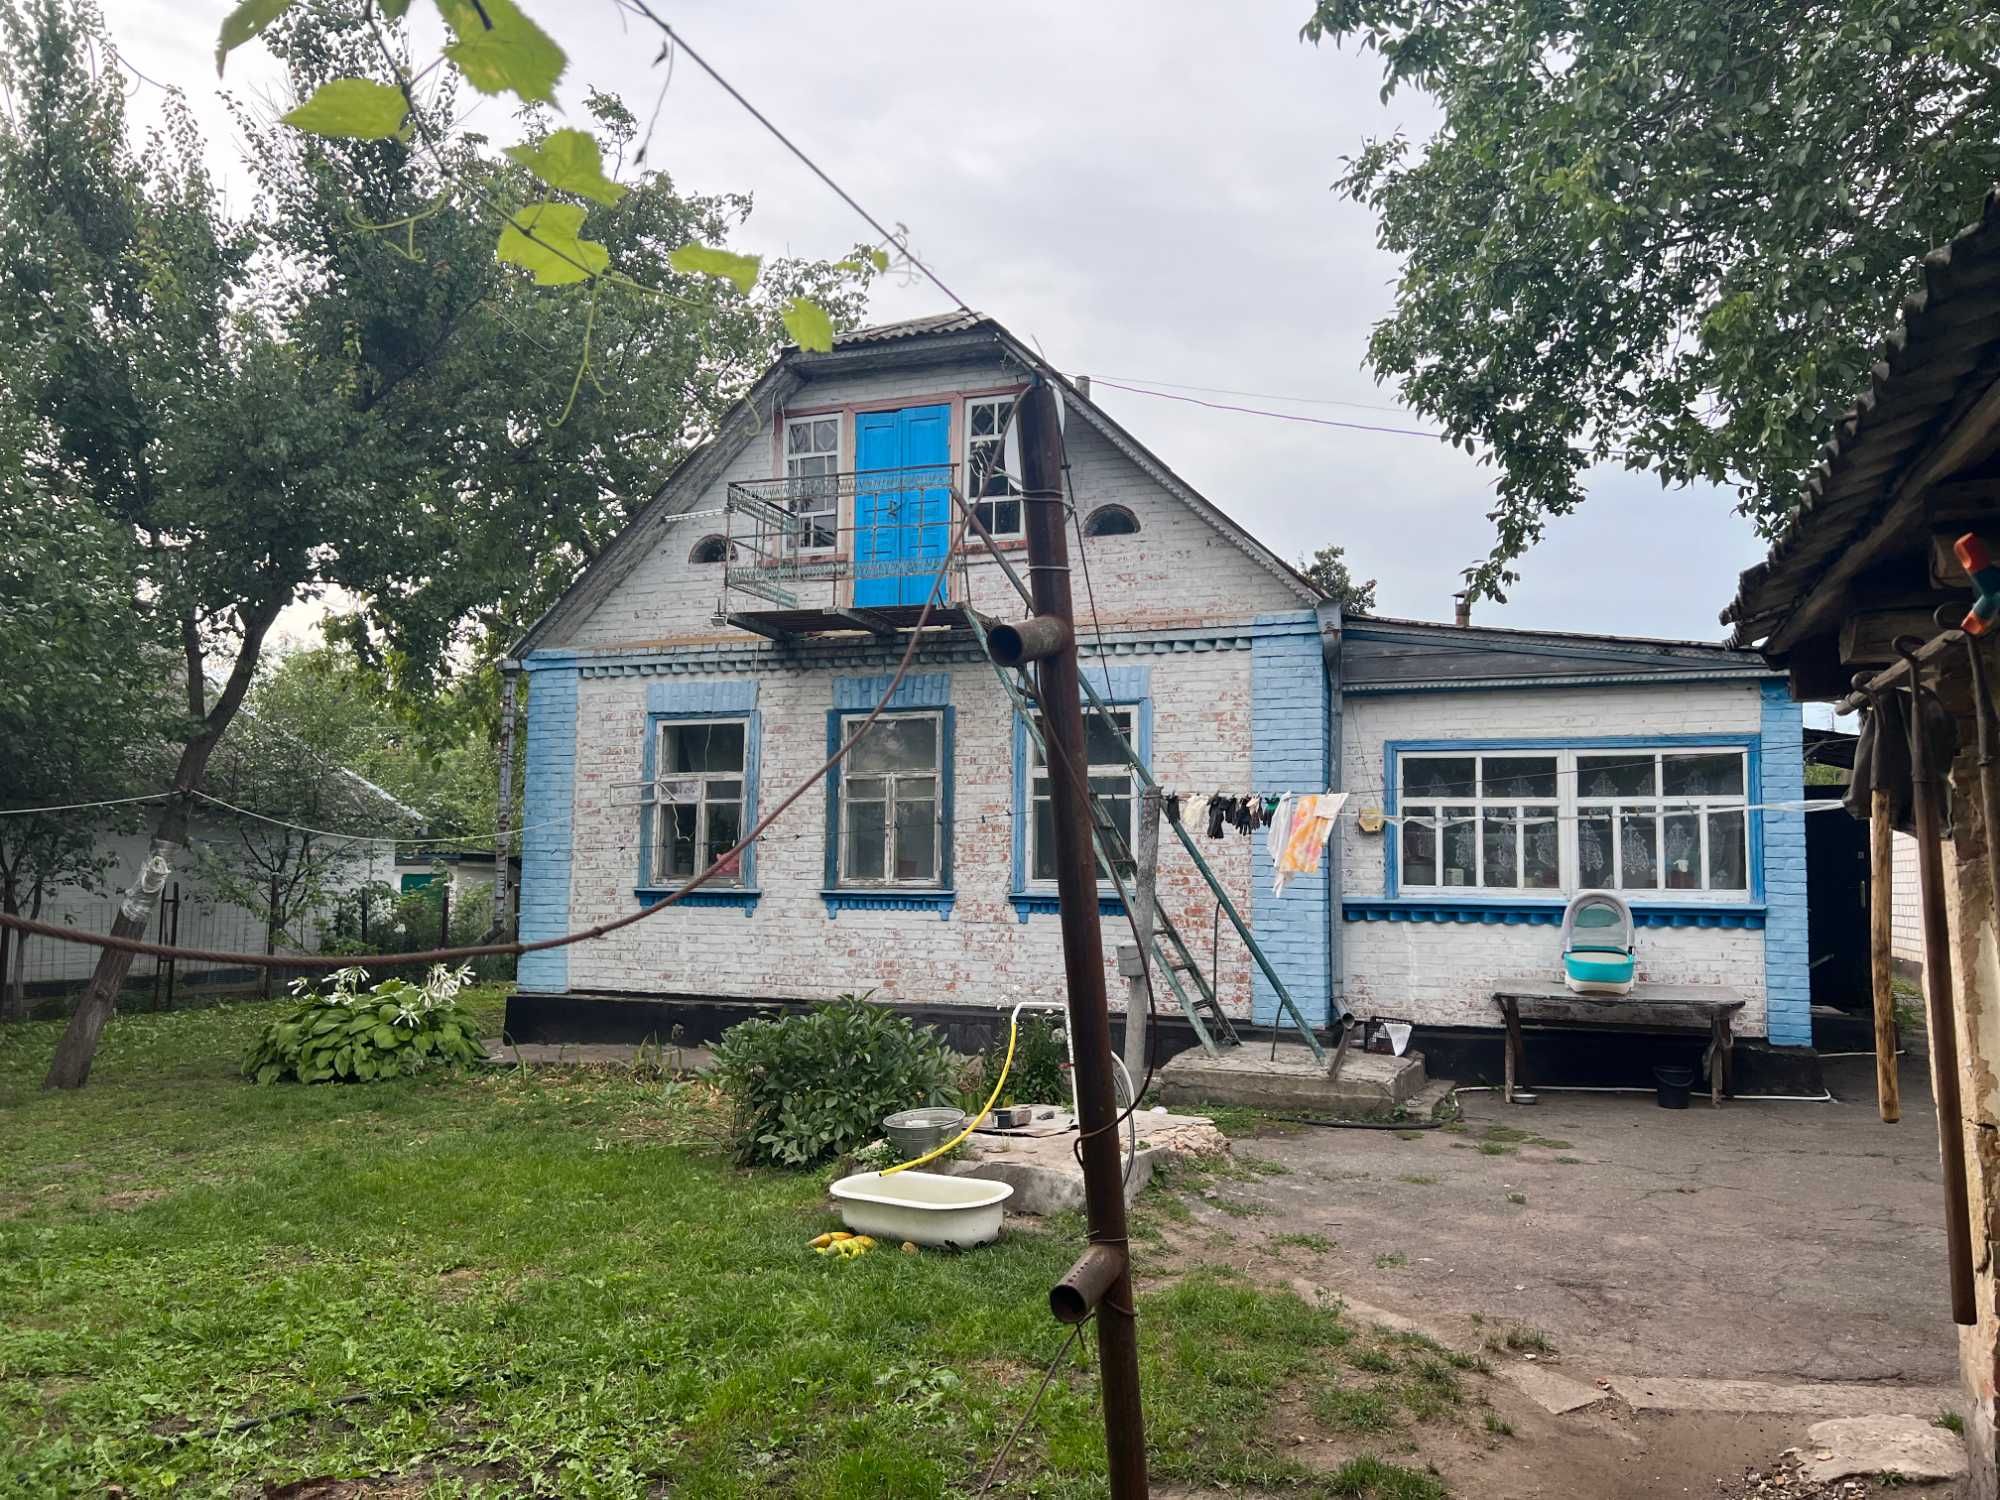 Продаж будинку в селі Садове, 72 м2 до м. Березань 1.5 км. ж/д поруч.